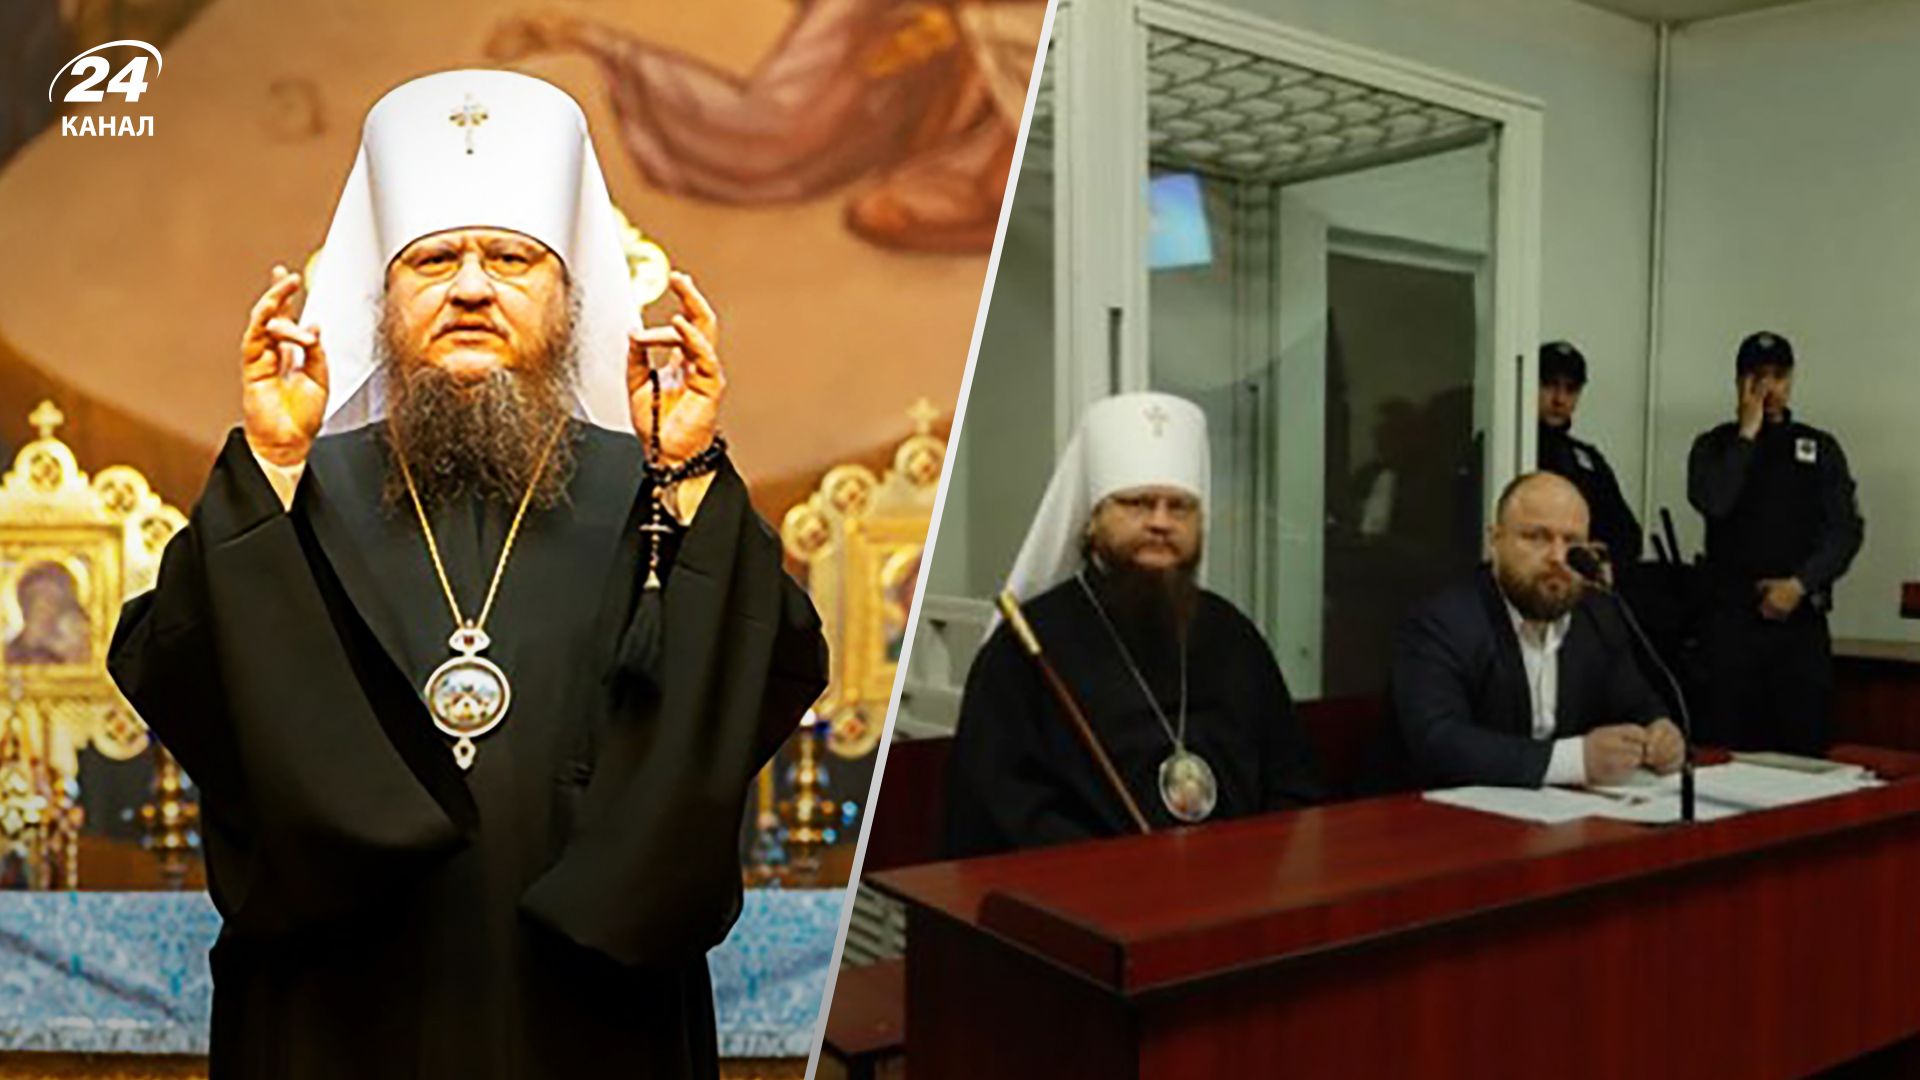 Феодосій митрополит Черкаської єпархії УПЦ МП проведе 60 діб під домашнім арештом